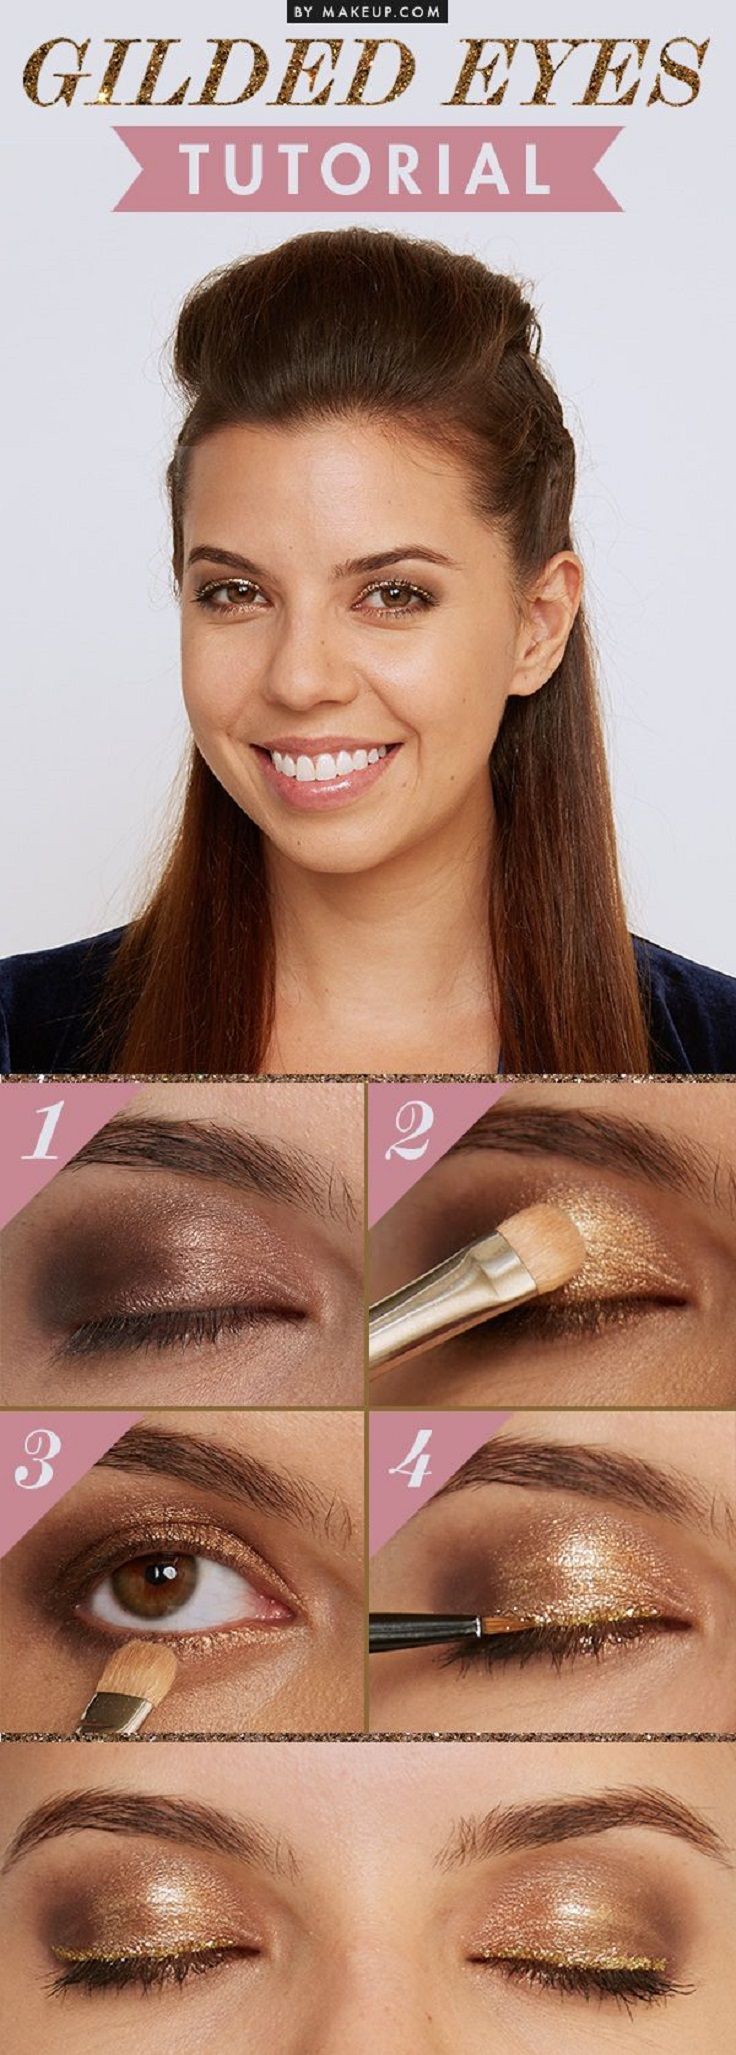 Makeup Tips & Tutorials : Top 10 des tutoriels pour fard à paupières ...